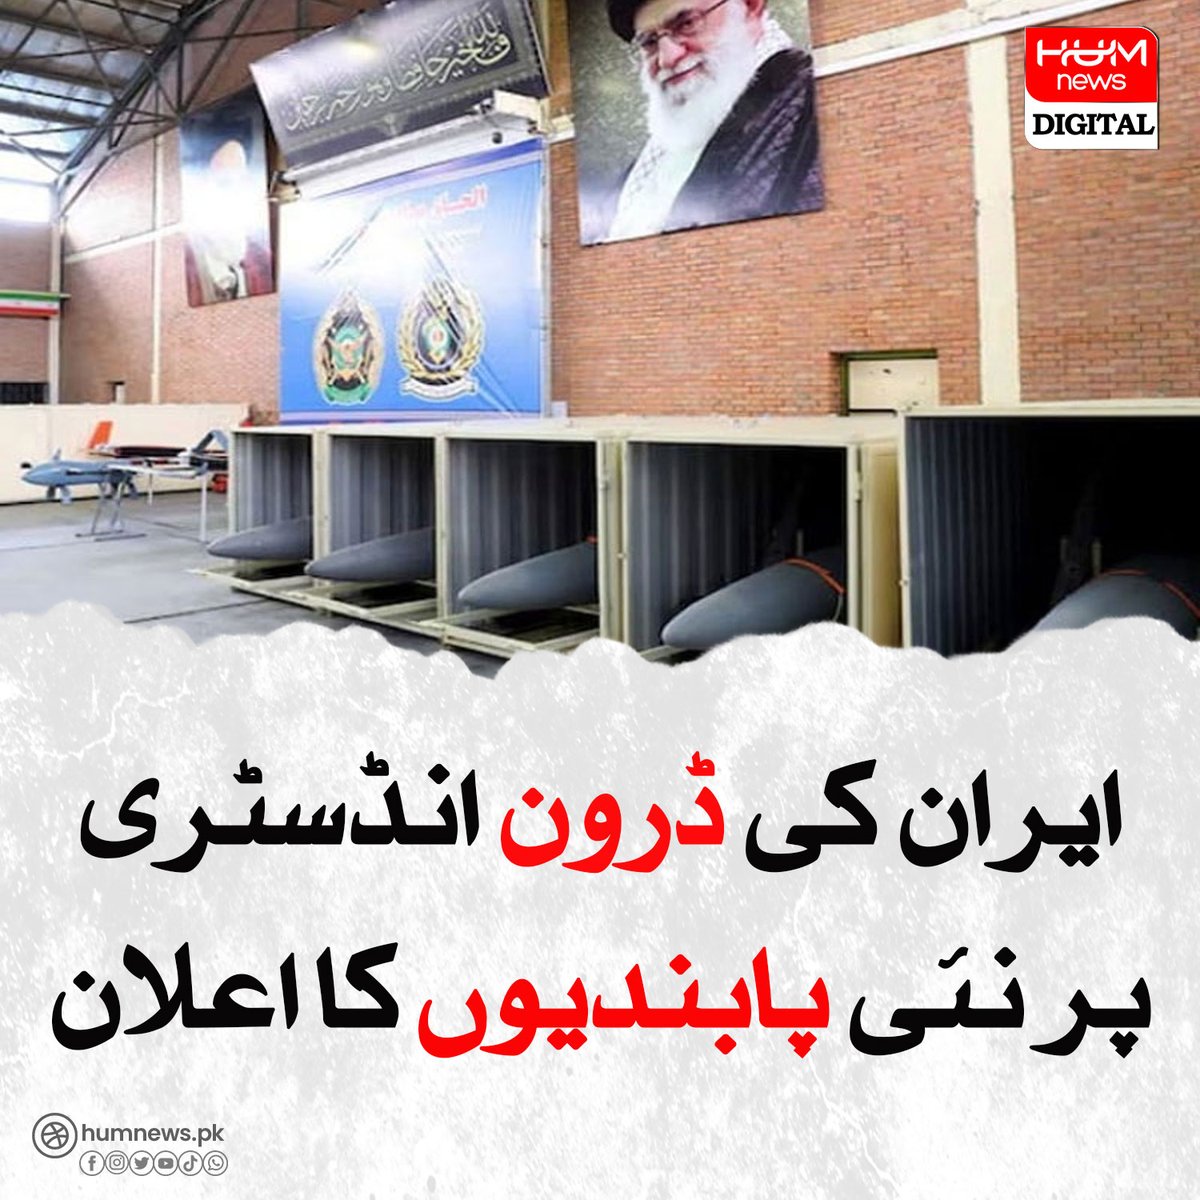 ایران کی ڈرون انڈسٹری پر نئی پابندیوں کا اعلان
humnews.pk/latest/480165/